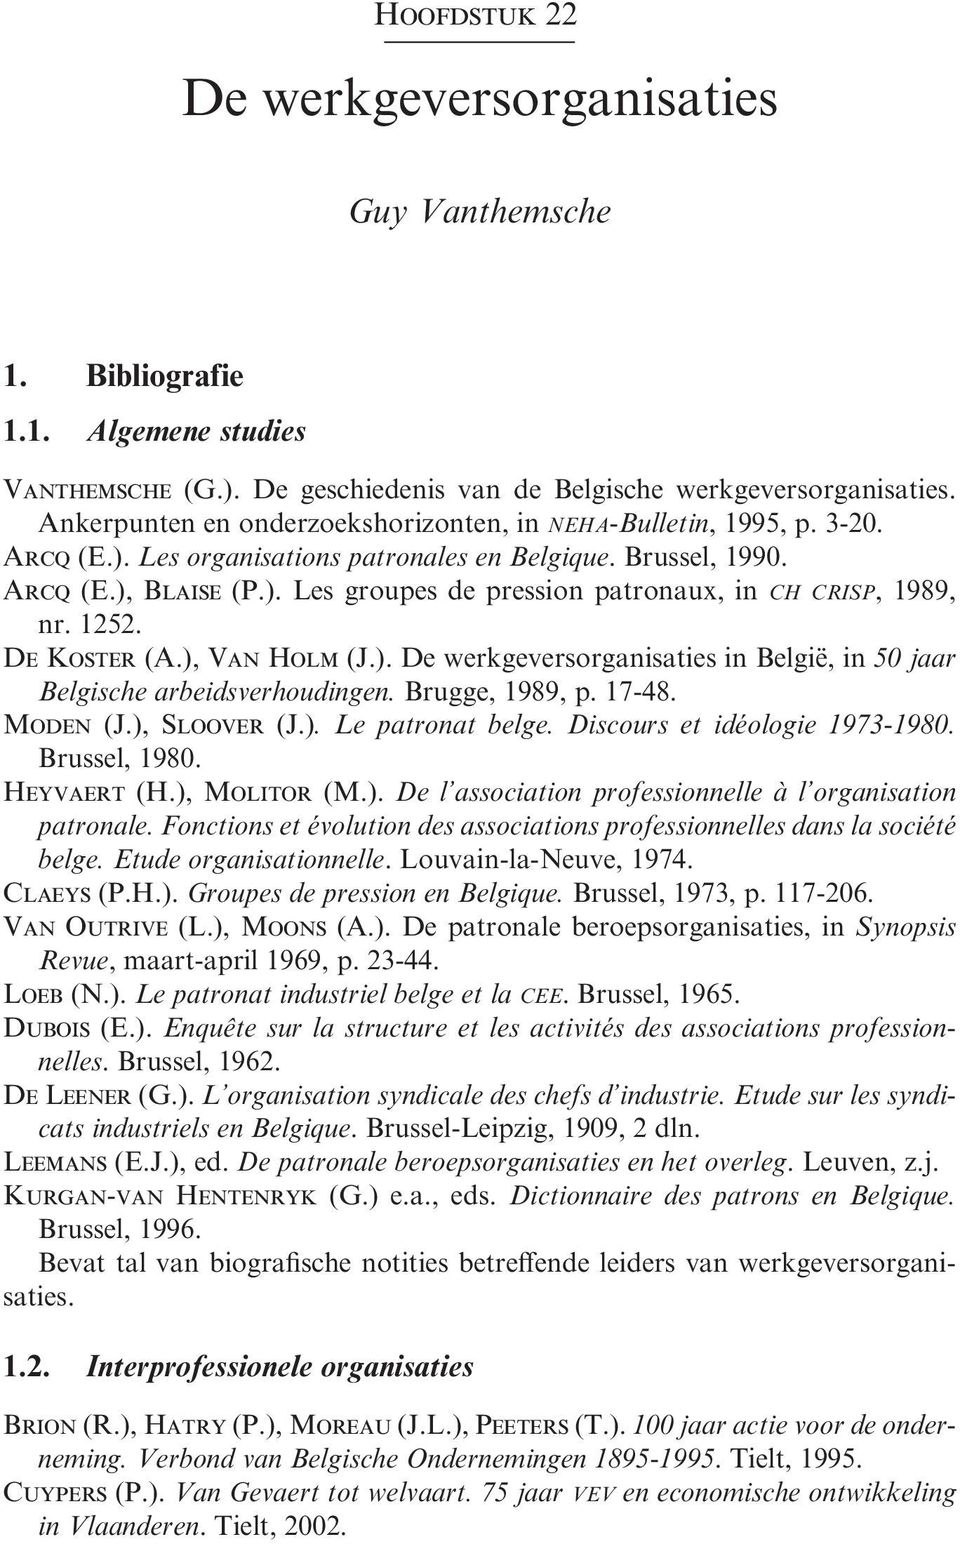 1252. De Koster (A.), Van Holm (J.). De werkgeversorganisaties in België, in 50 jaar Belgische arbeidsverhoudingen. Brugge, 1989, p. 17-48. Moden (J.), Sloover (J.). Le patronat belge.